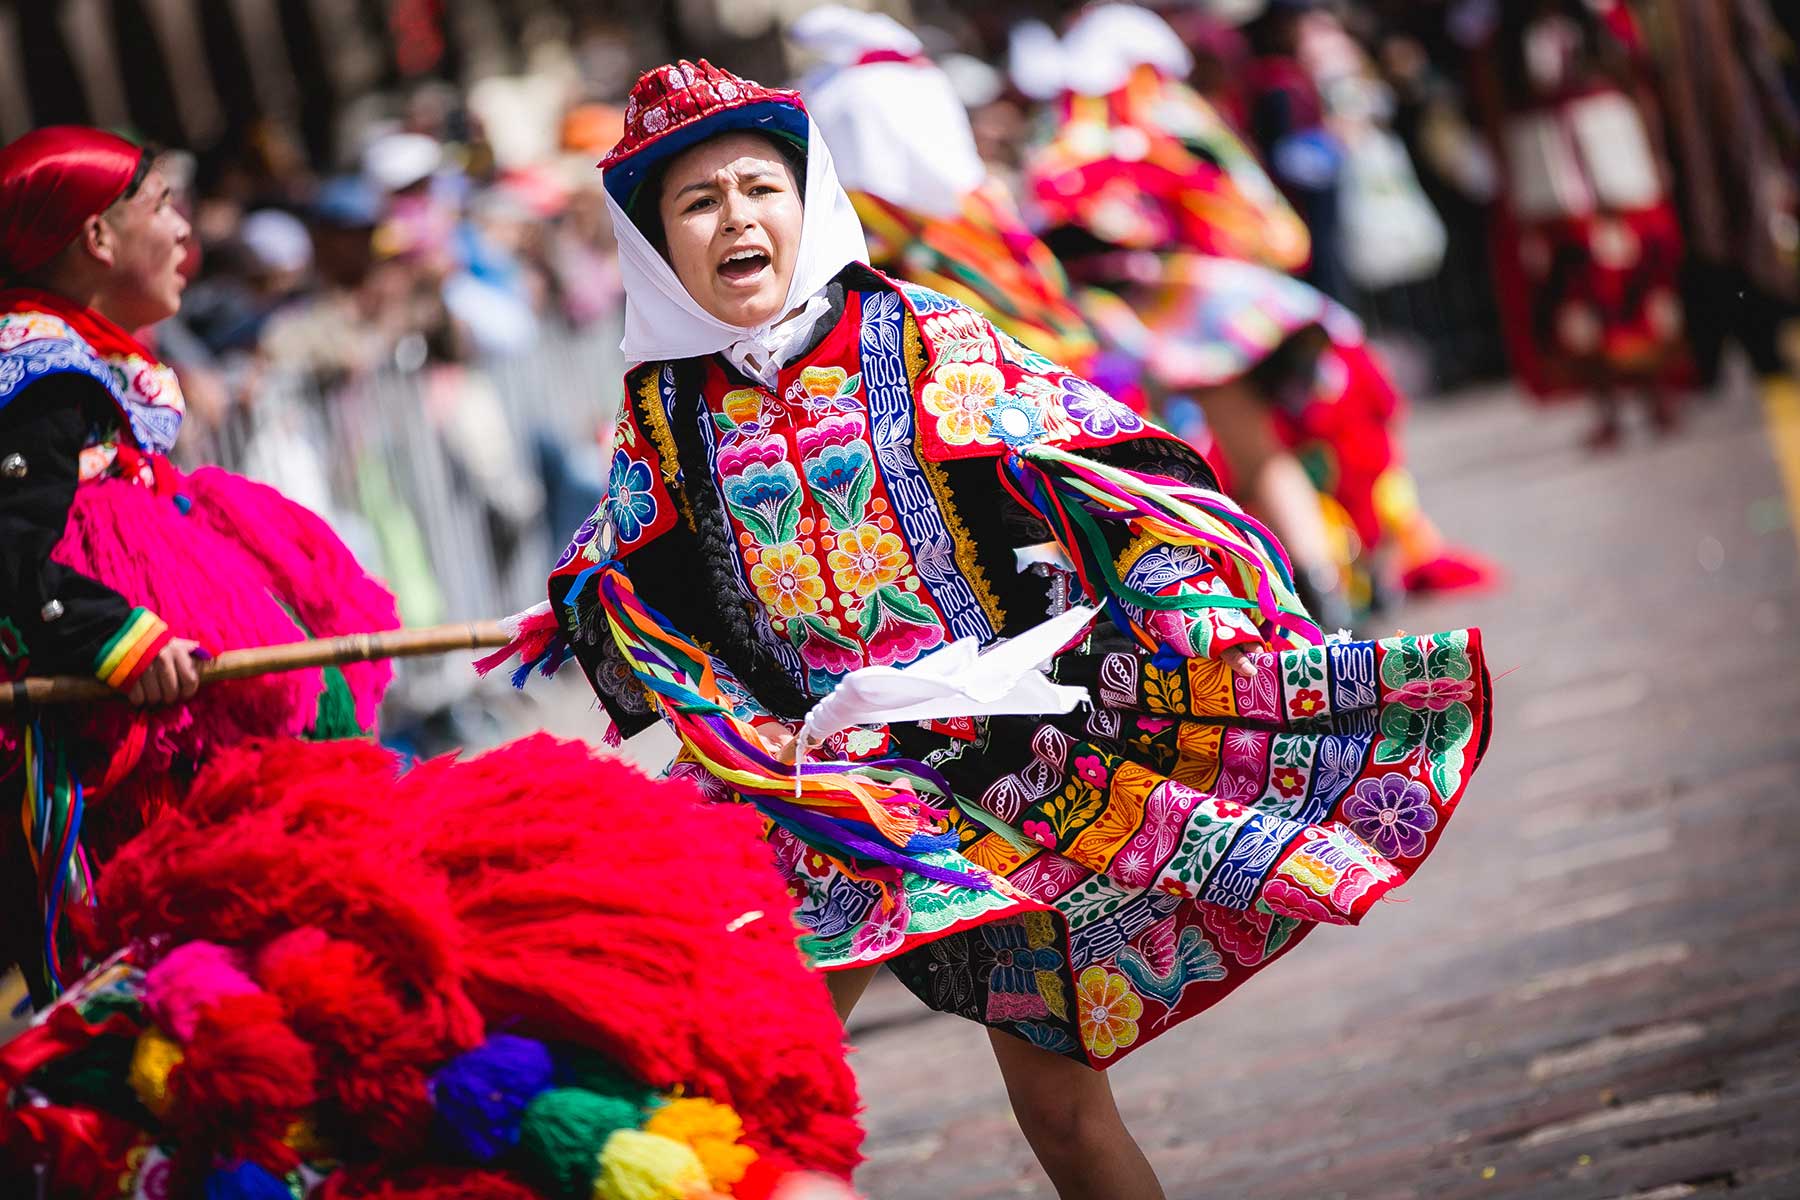 Los bailarines lucen trajes multicolores y derrochan buen ritmo durante las coreografías preparadas para homenajear al Cusco